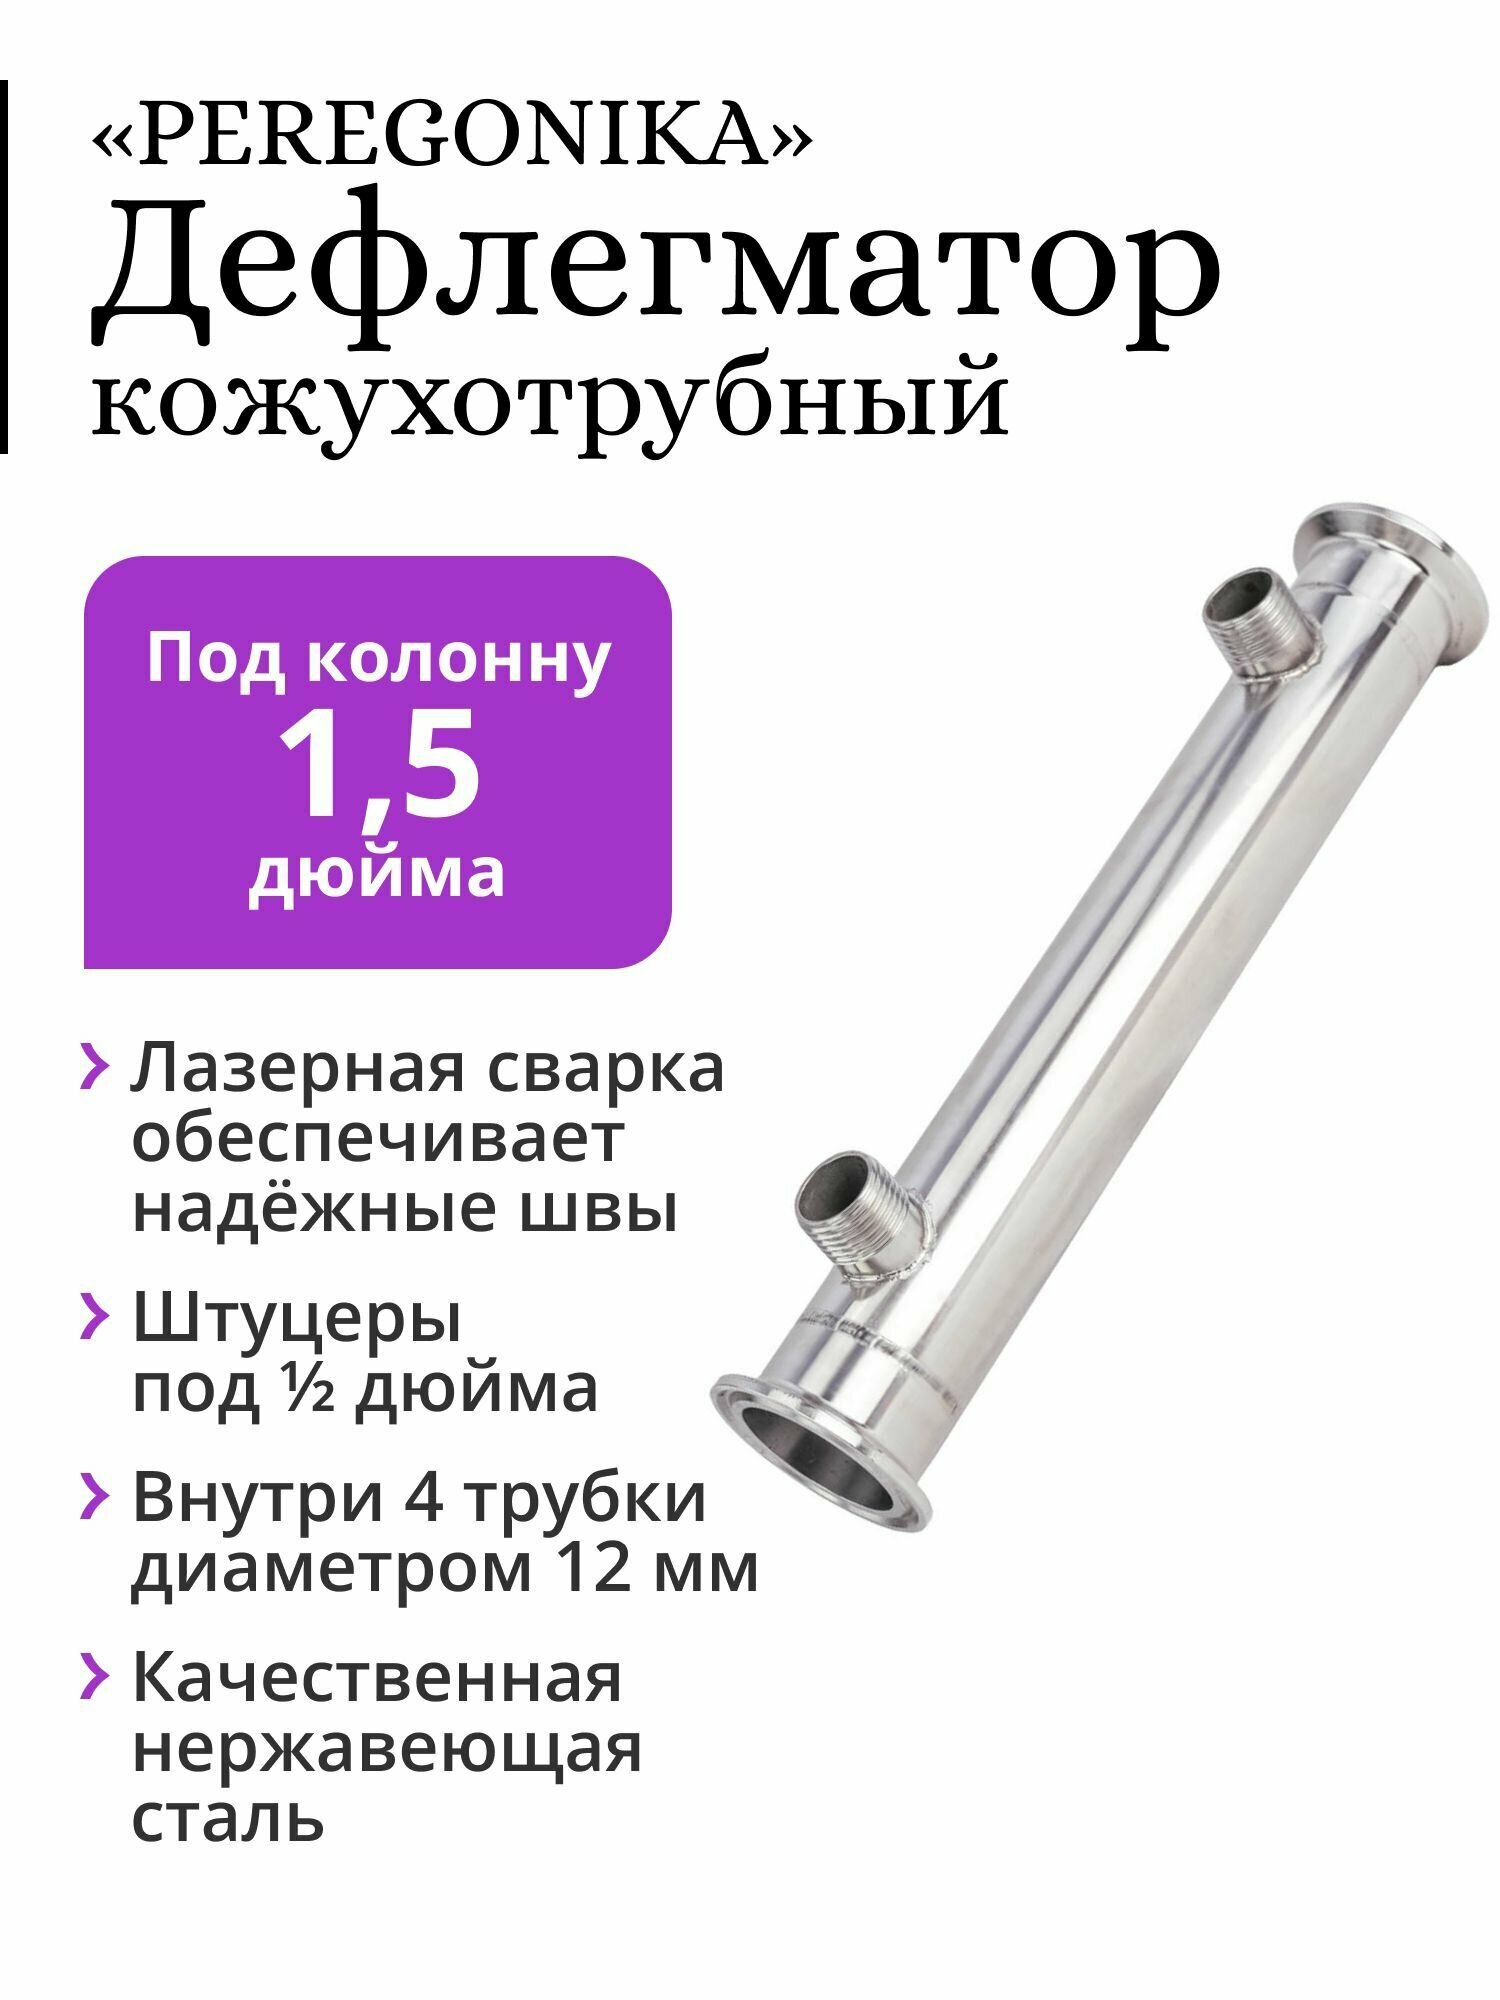 Дефлегматор PEREGONIKA, кожухотрубный, для колонны 1,5 дюйма, трубки 4х12 мм